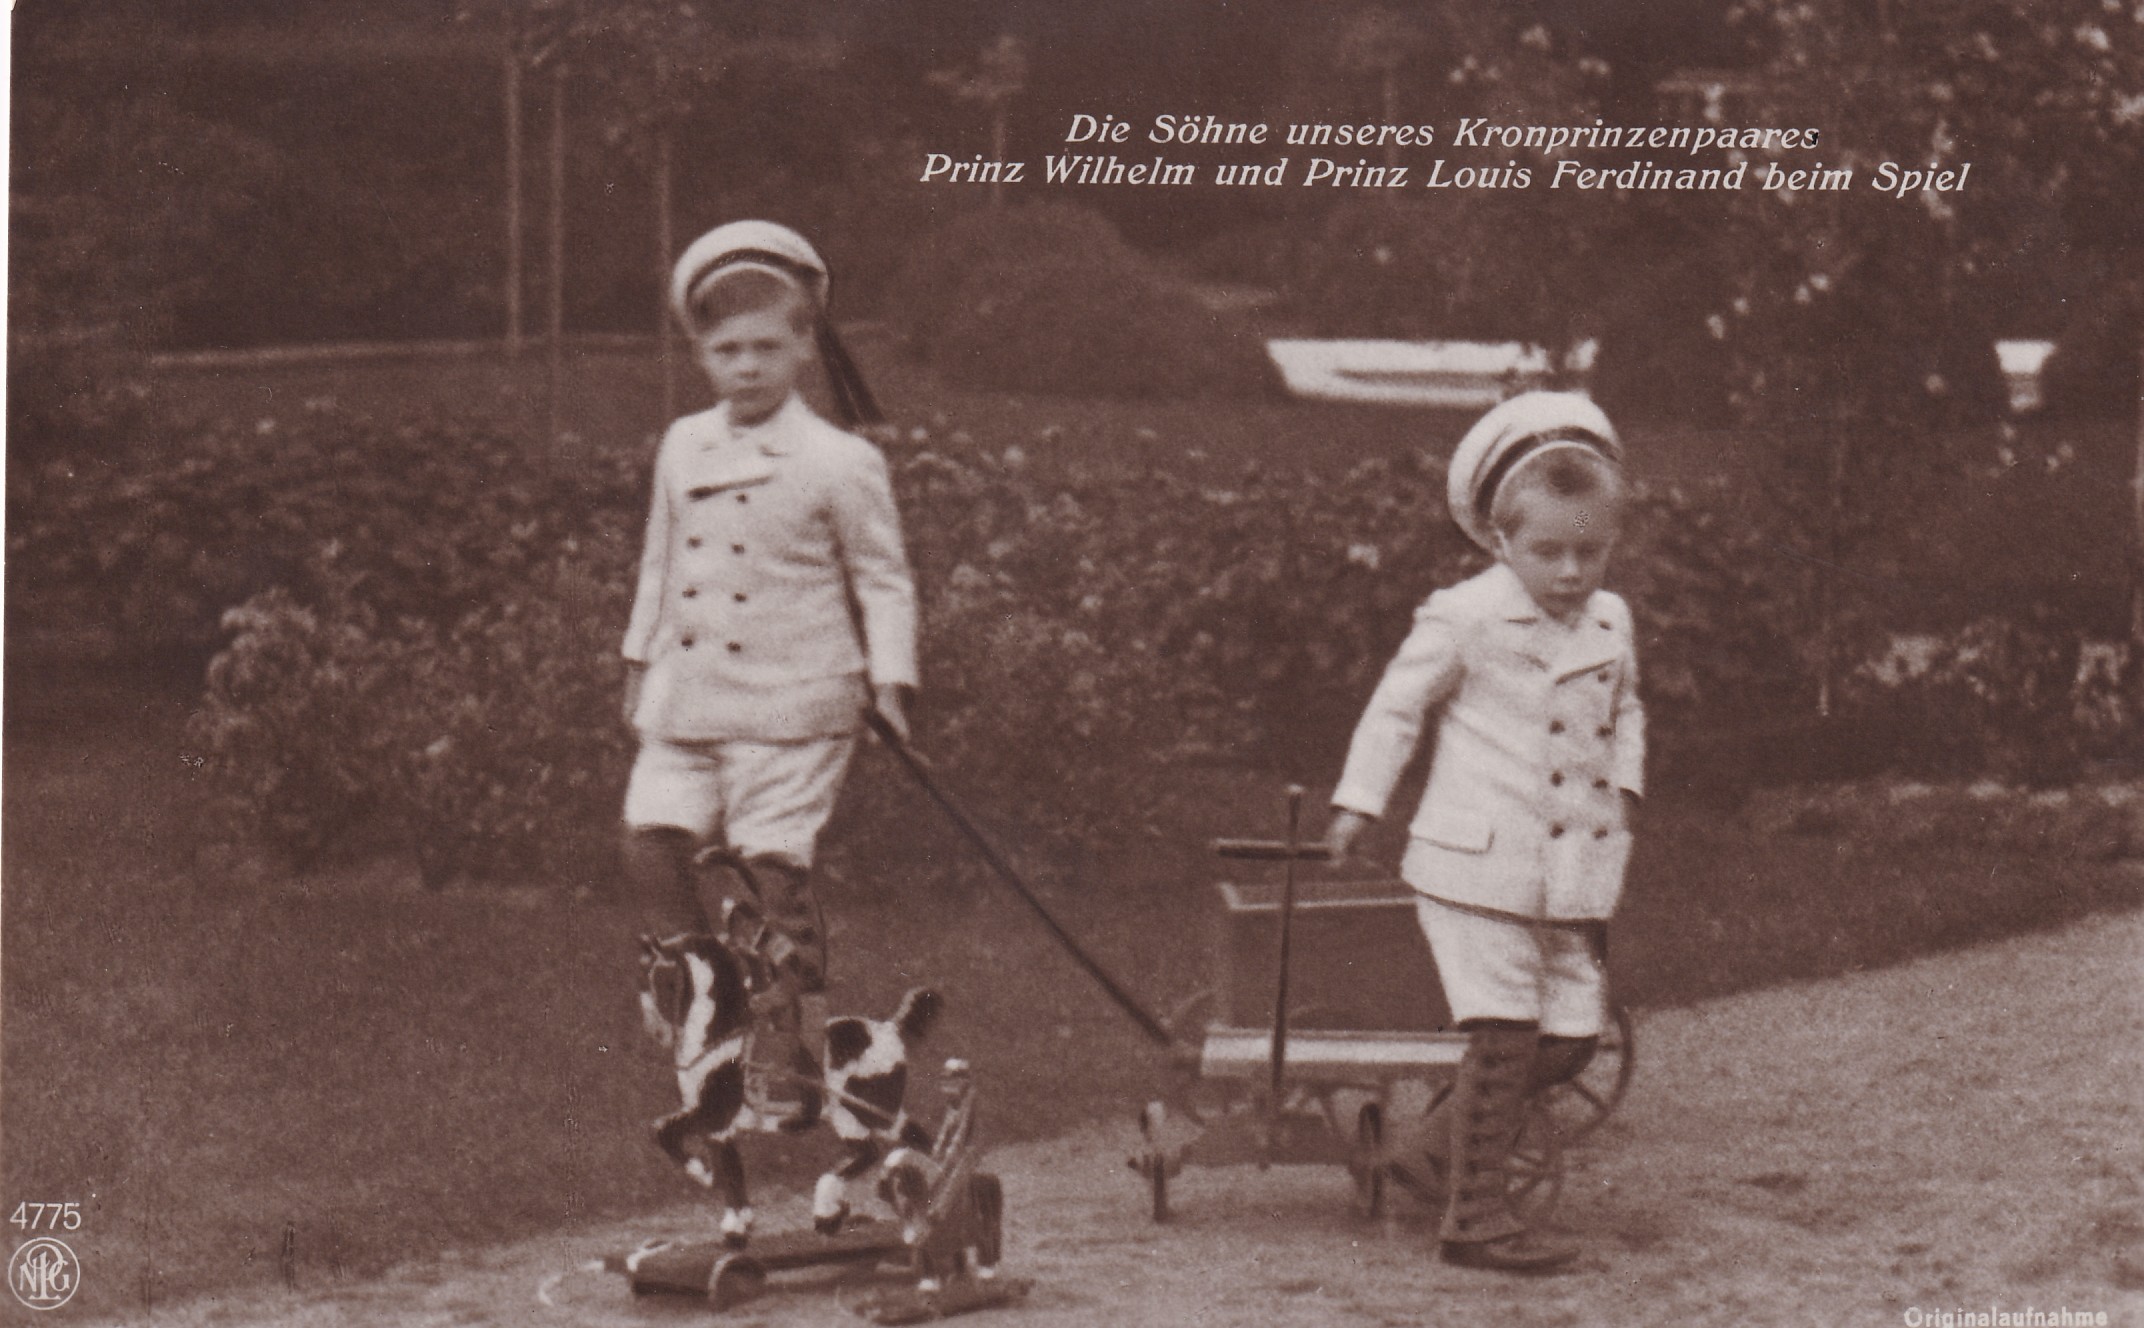 Bildpostkarte mit den beiden ältesten Söhnen des Kronprinzenpaares beim Spielen im Garten, 1910 (Schloß Wernigerode GmbH RR-F)